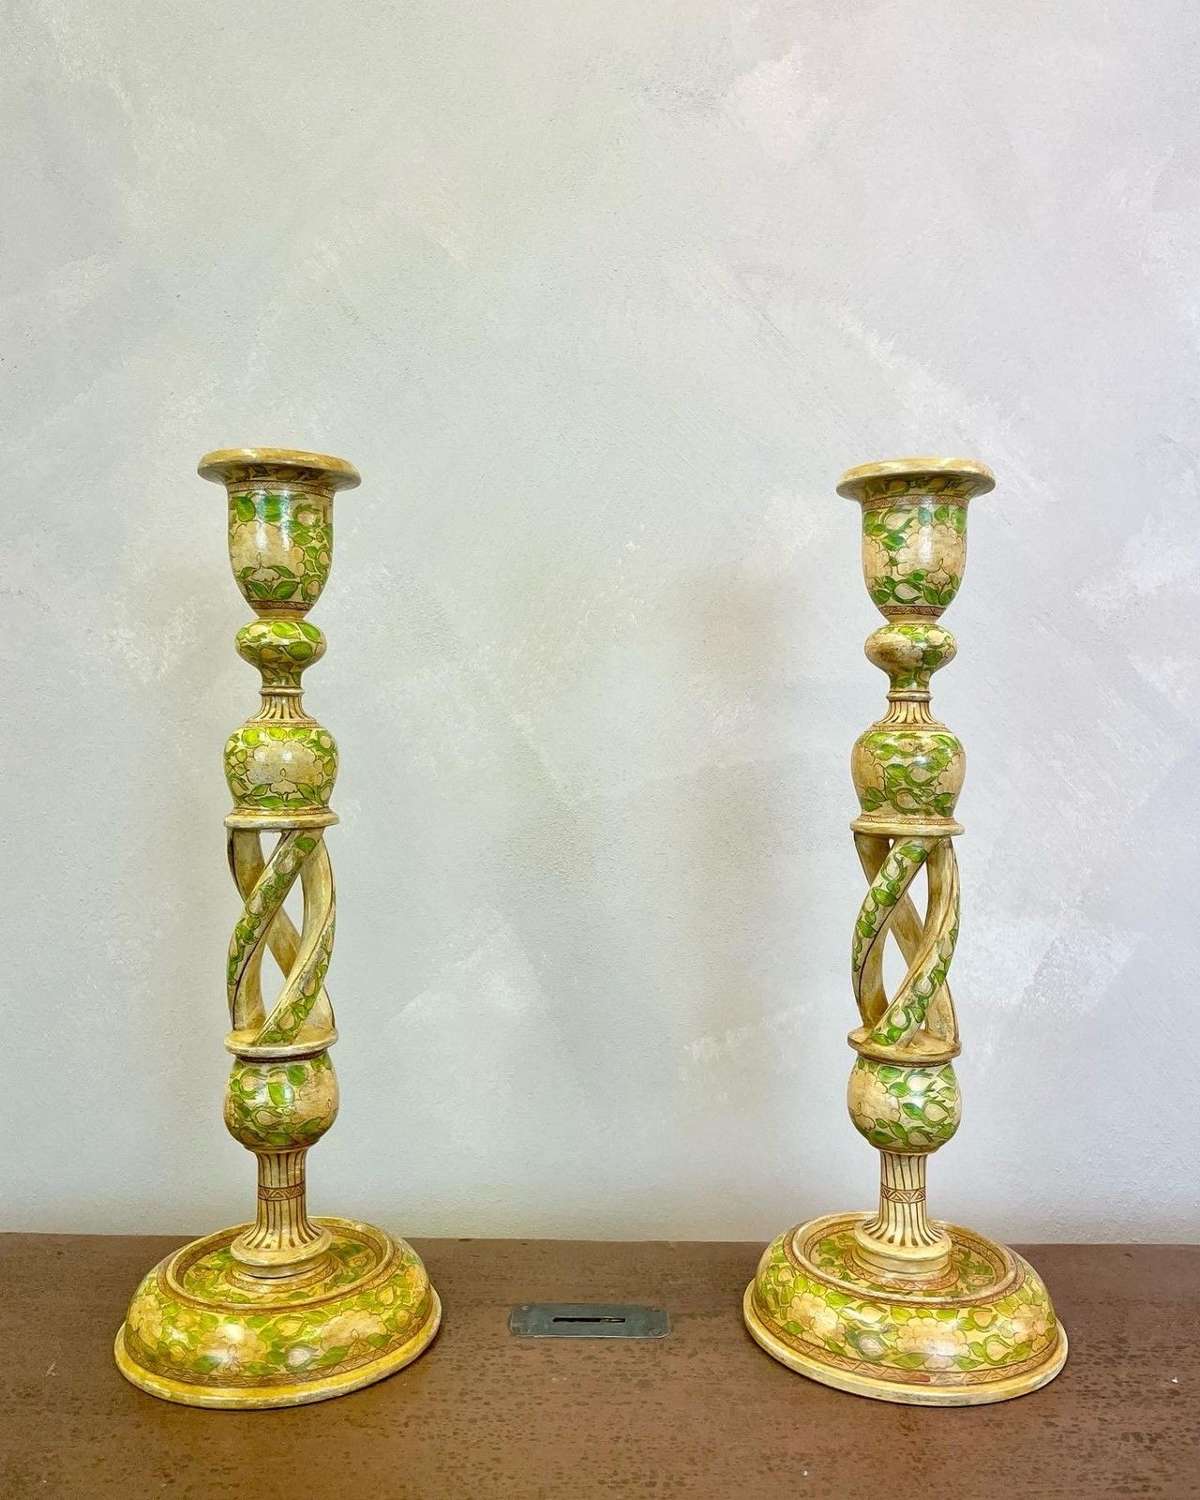 Kashmiri table lamps/candlesticks